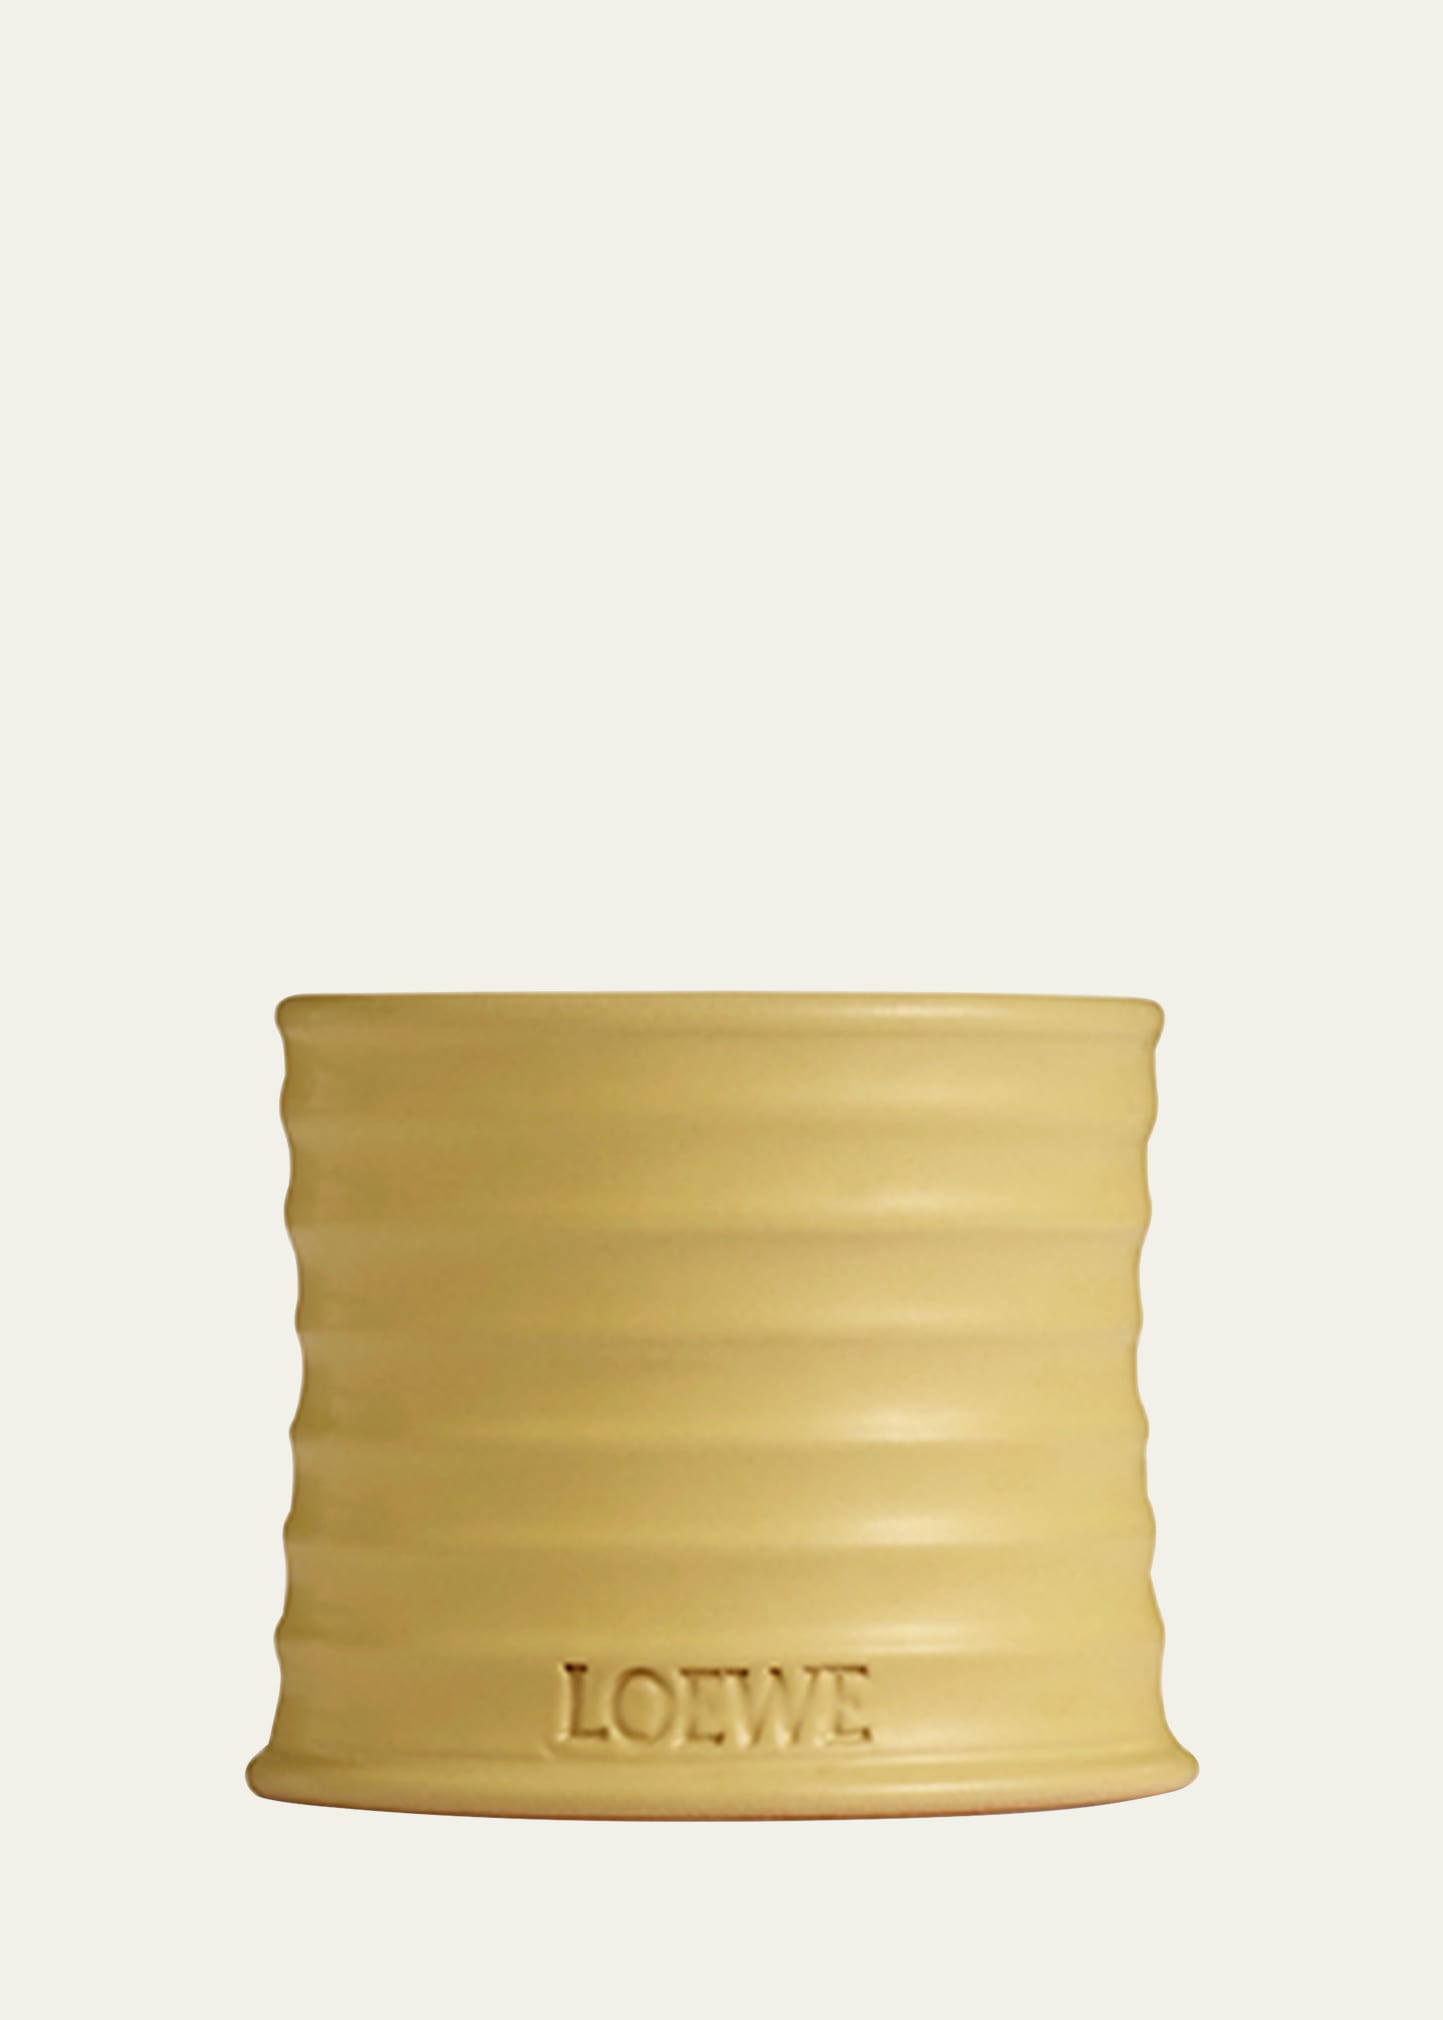 LOEWE Perfumes First American Store Bergdorf Goodman NYC — Anne of